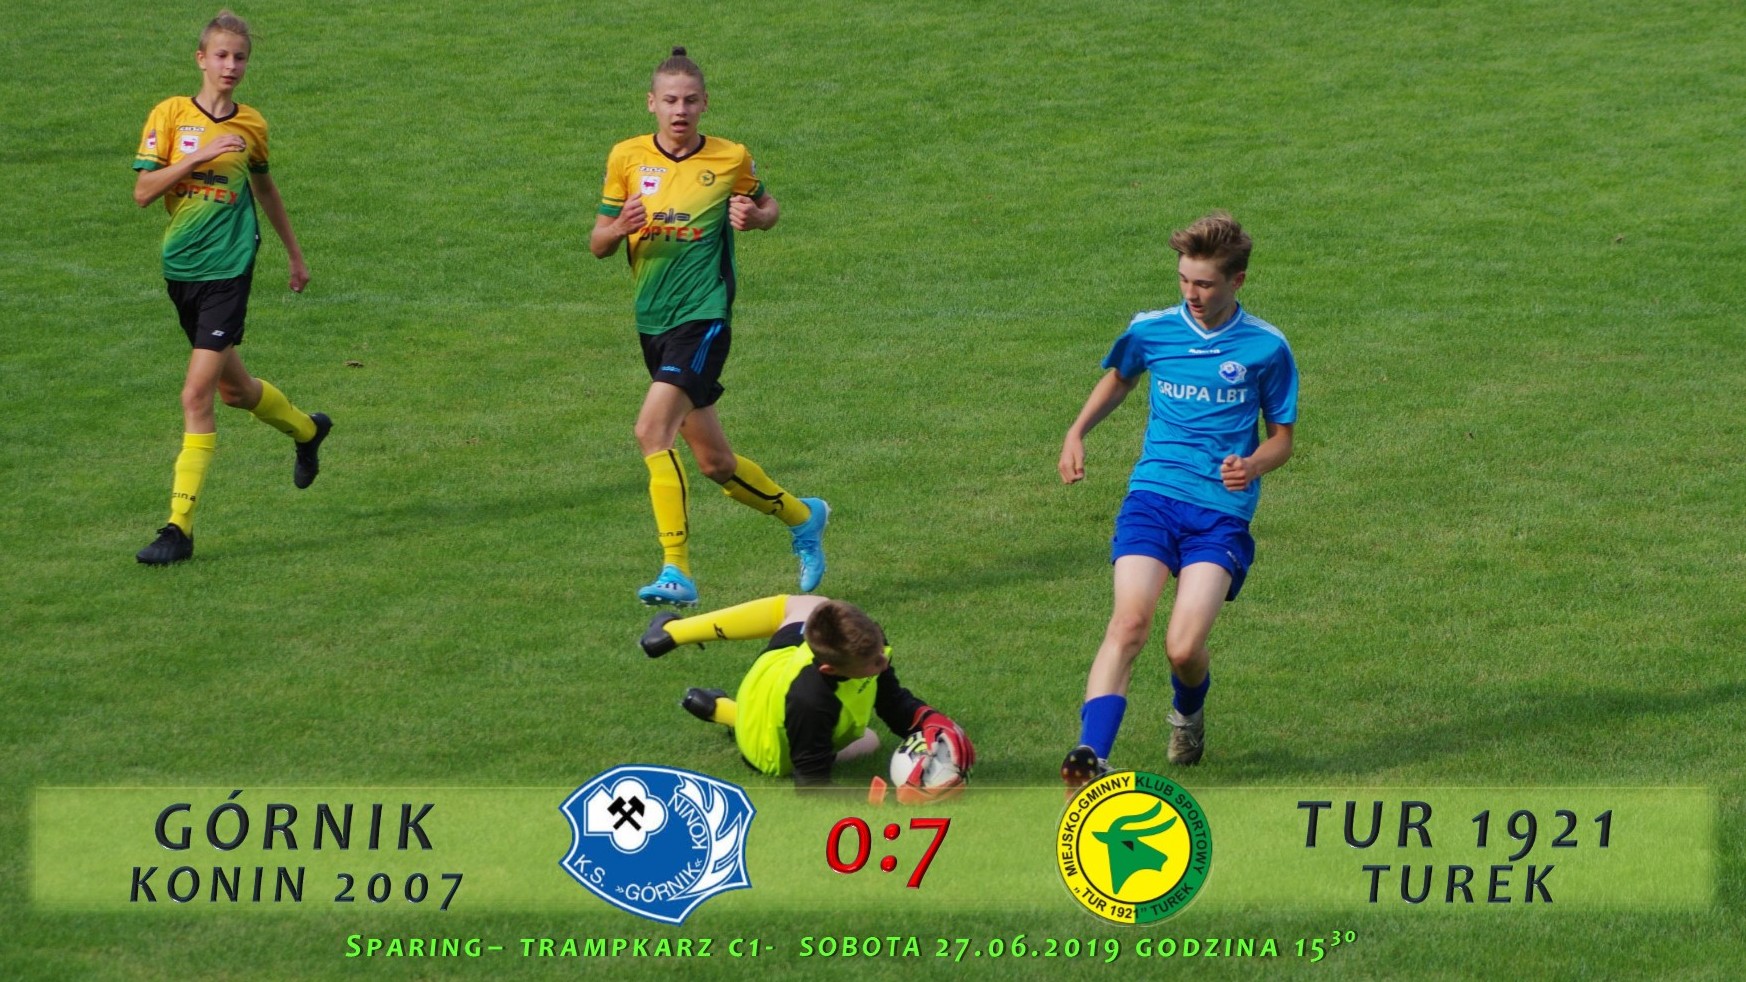 Górnik Konin 2007- Tur 1921 Turek 0:7, sparing C1